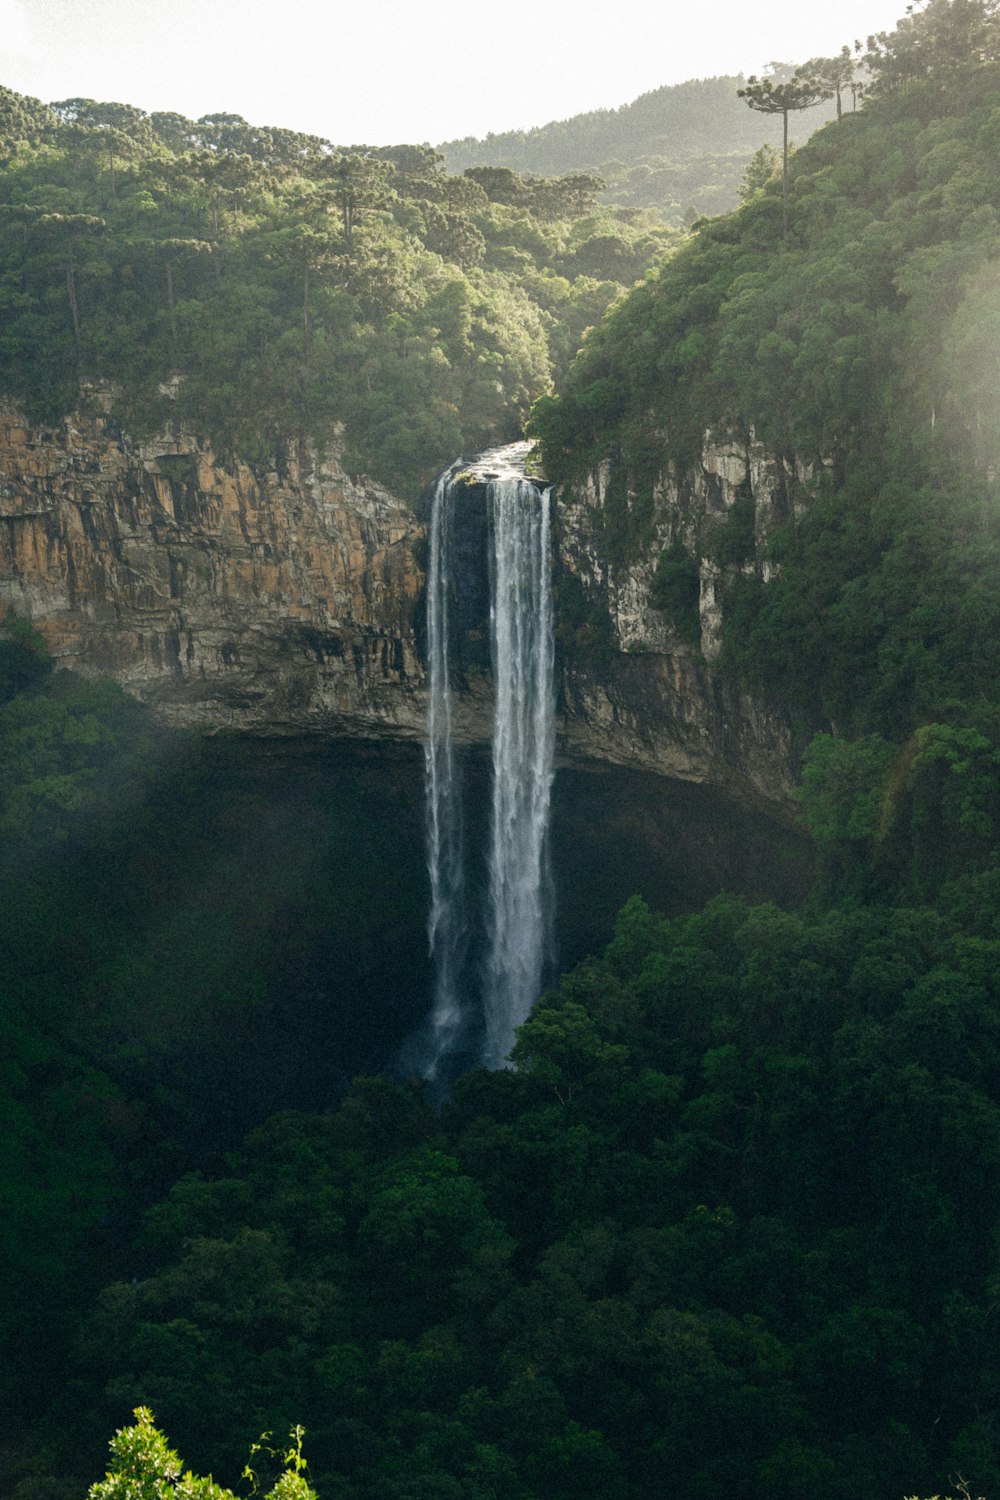 Une grande cascade se trouve au milieu d’une forêt